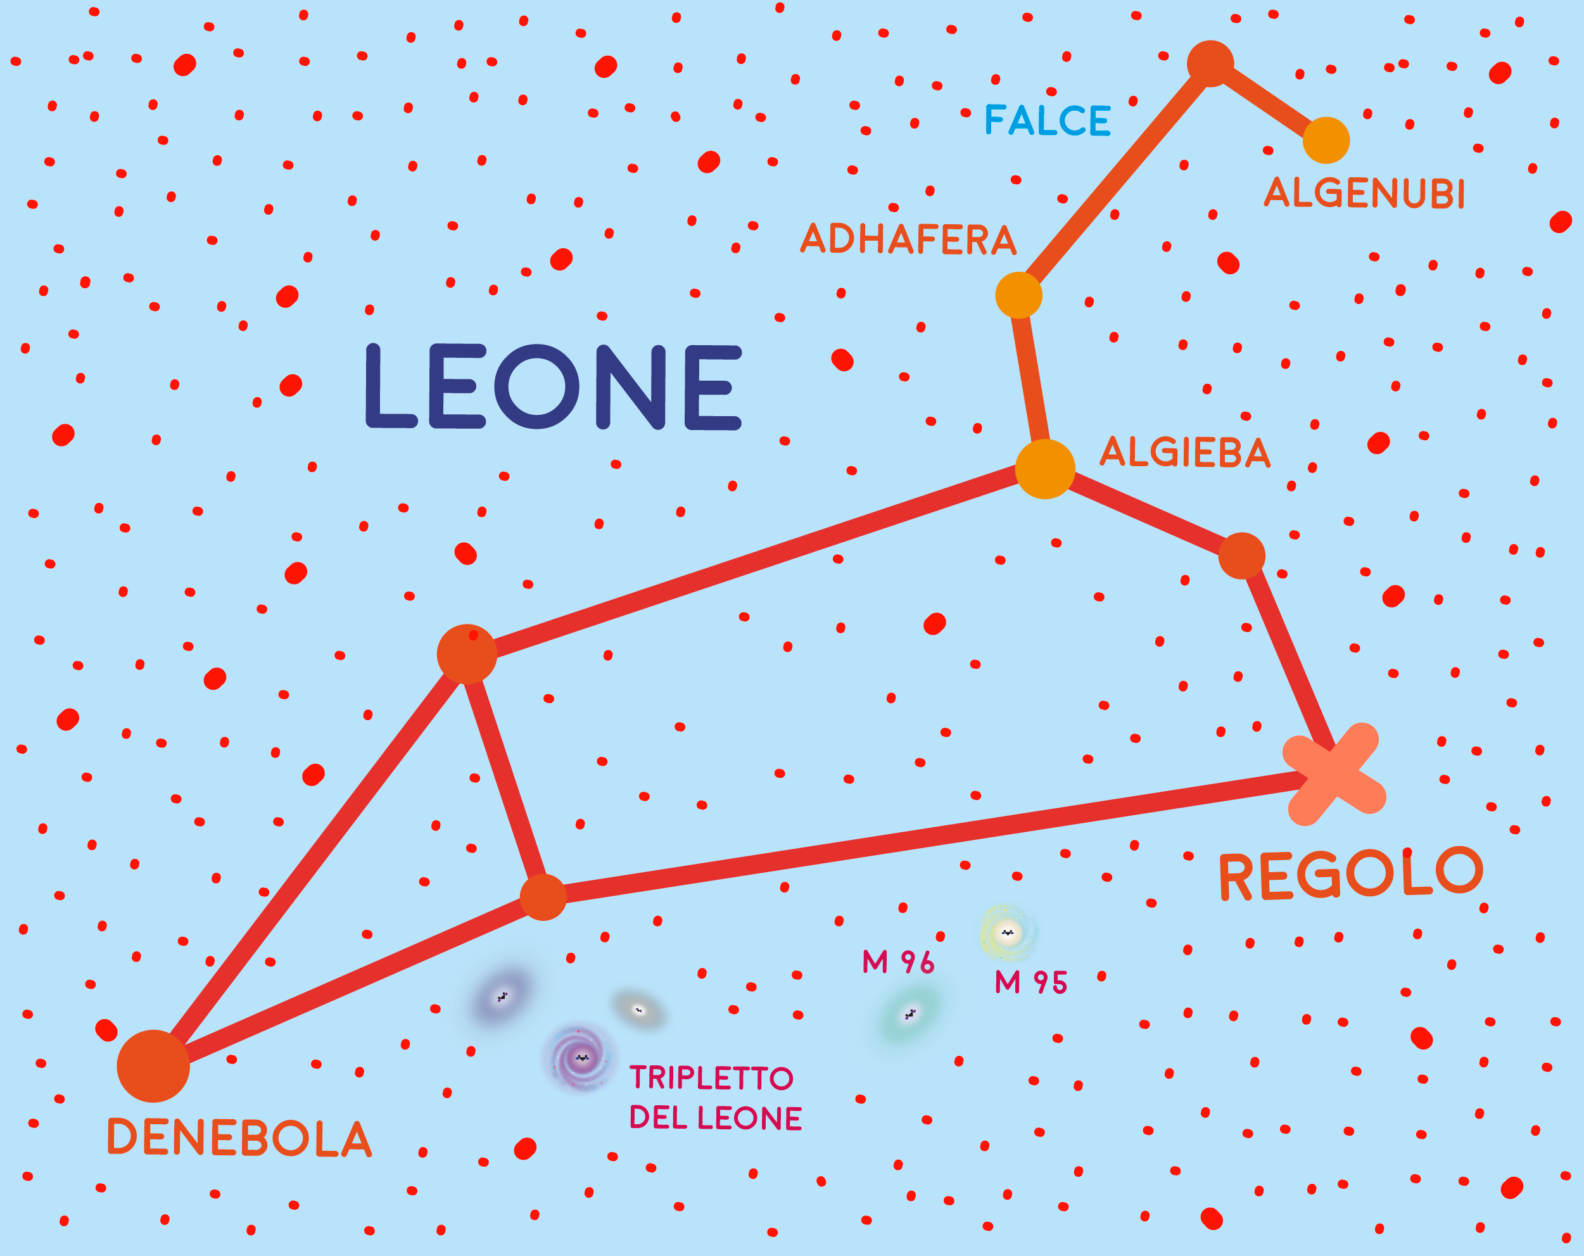 Costellazione del Leone, Tripletto del Leone